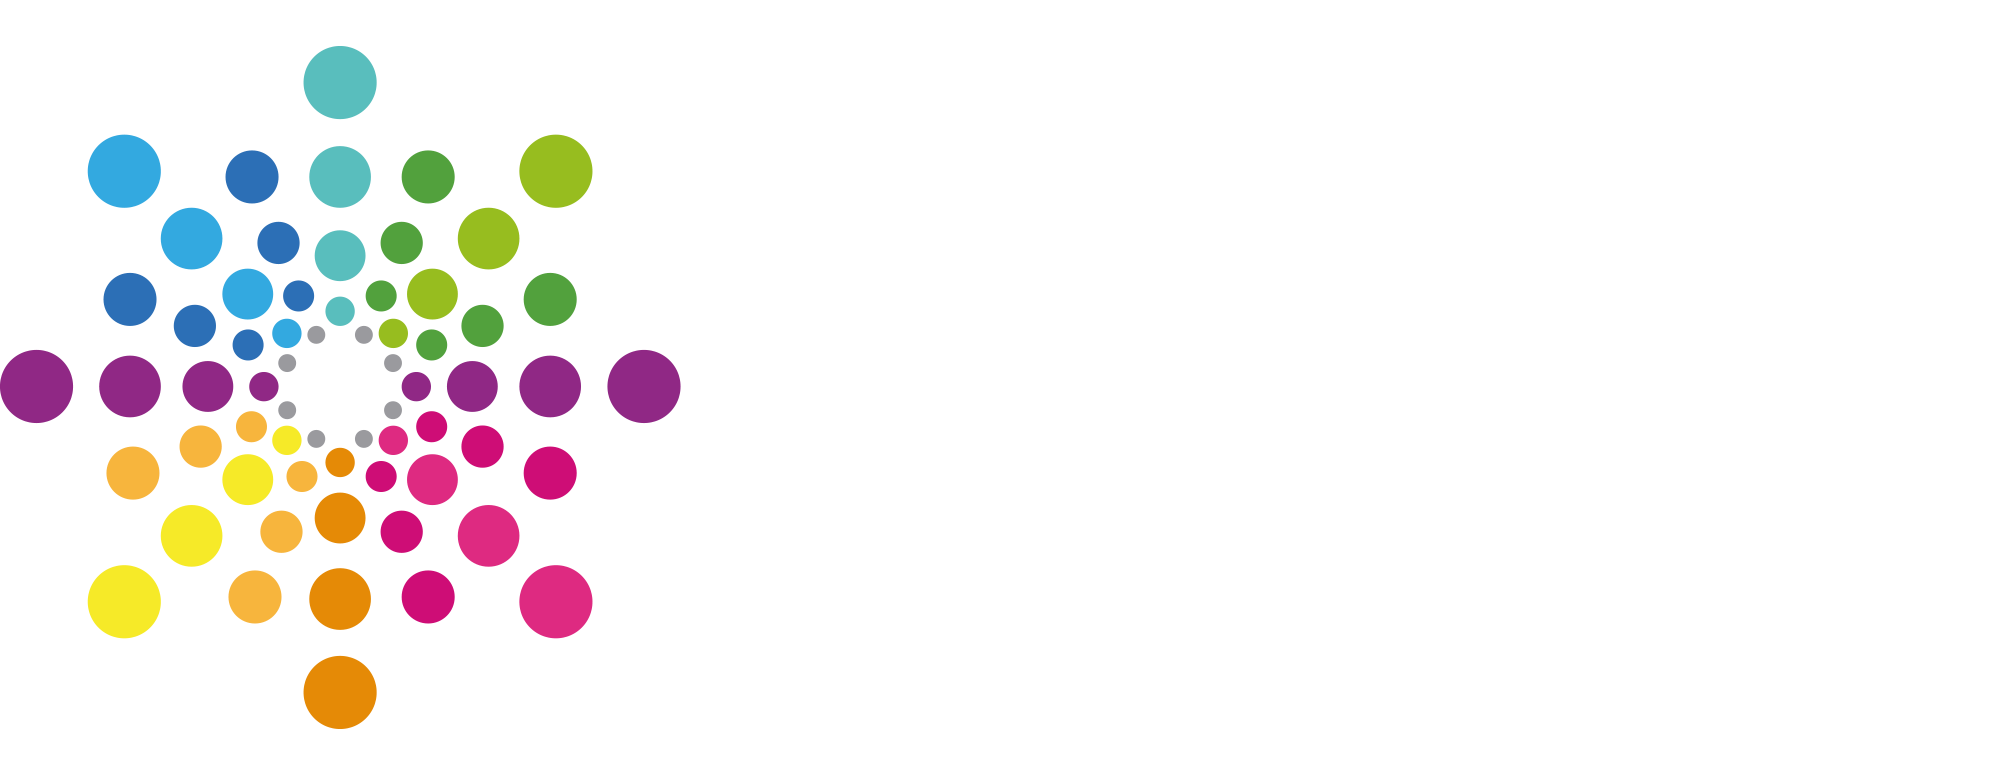 Corporación Cultural de La Florida